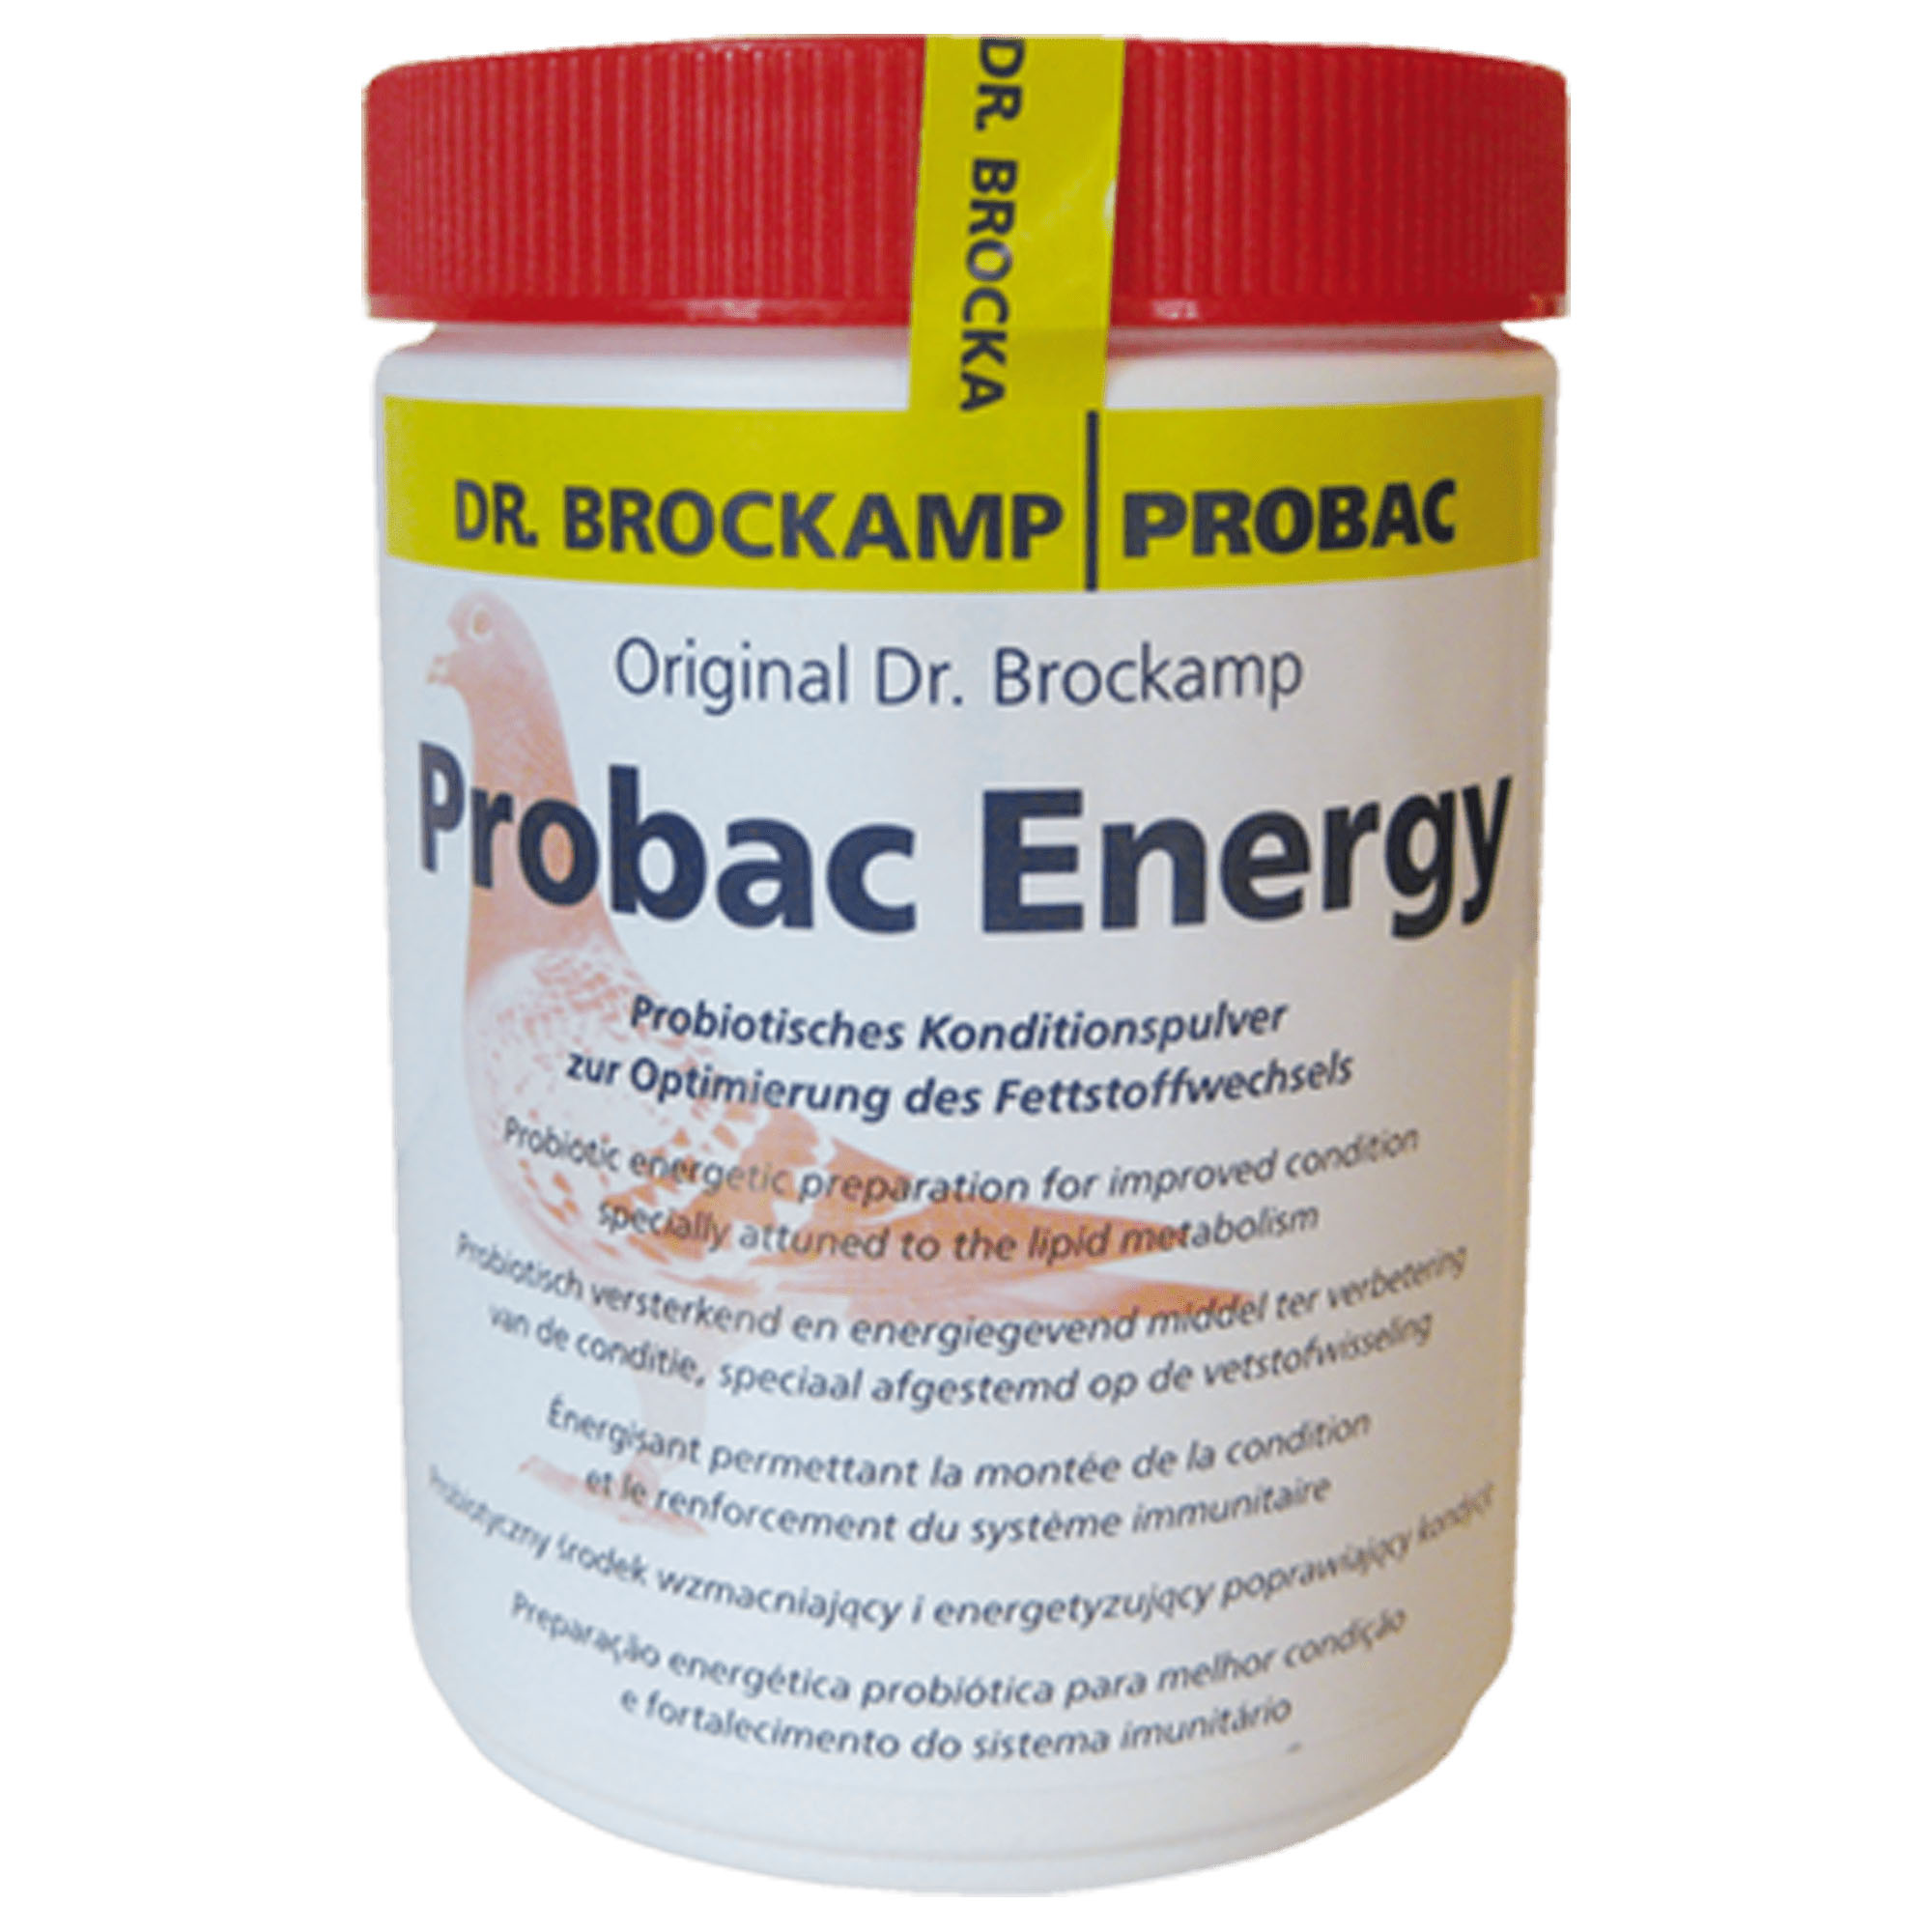 Probac Energy